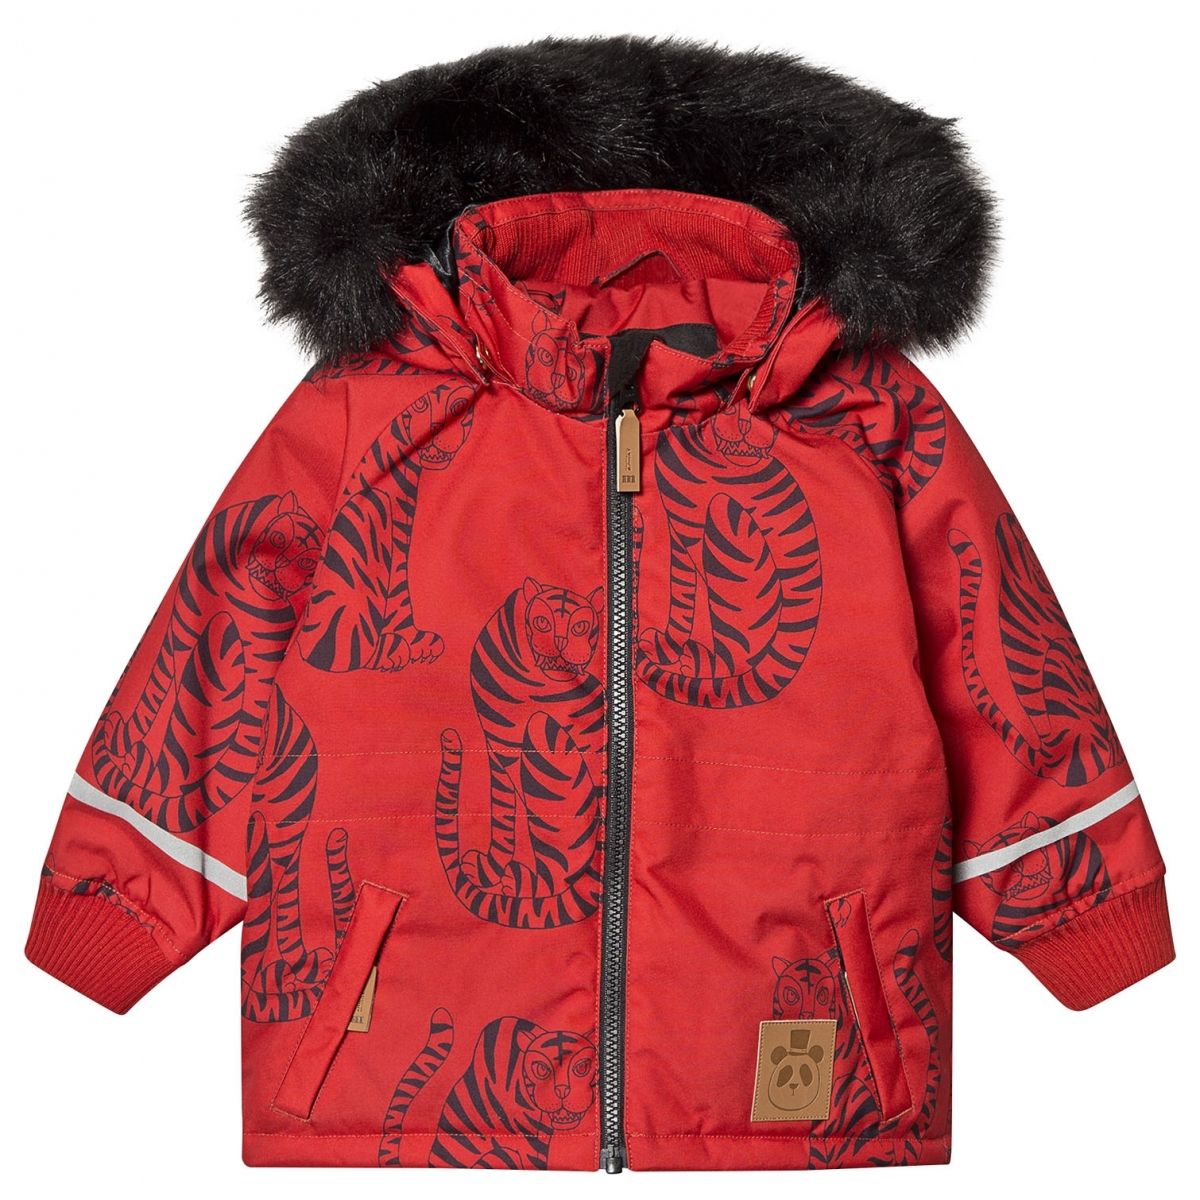 Mini Rodini - Kurtka zimowa K2 tiger czerwona - Płaszcze, kurtki i kombinezony - 1971011642 